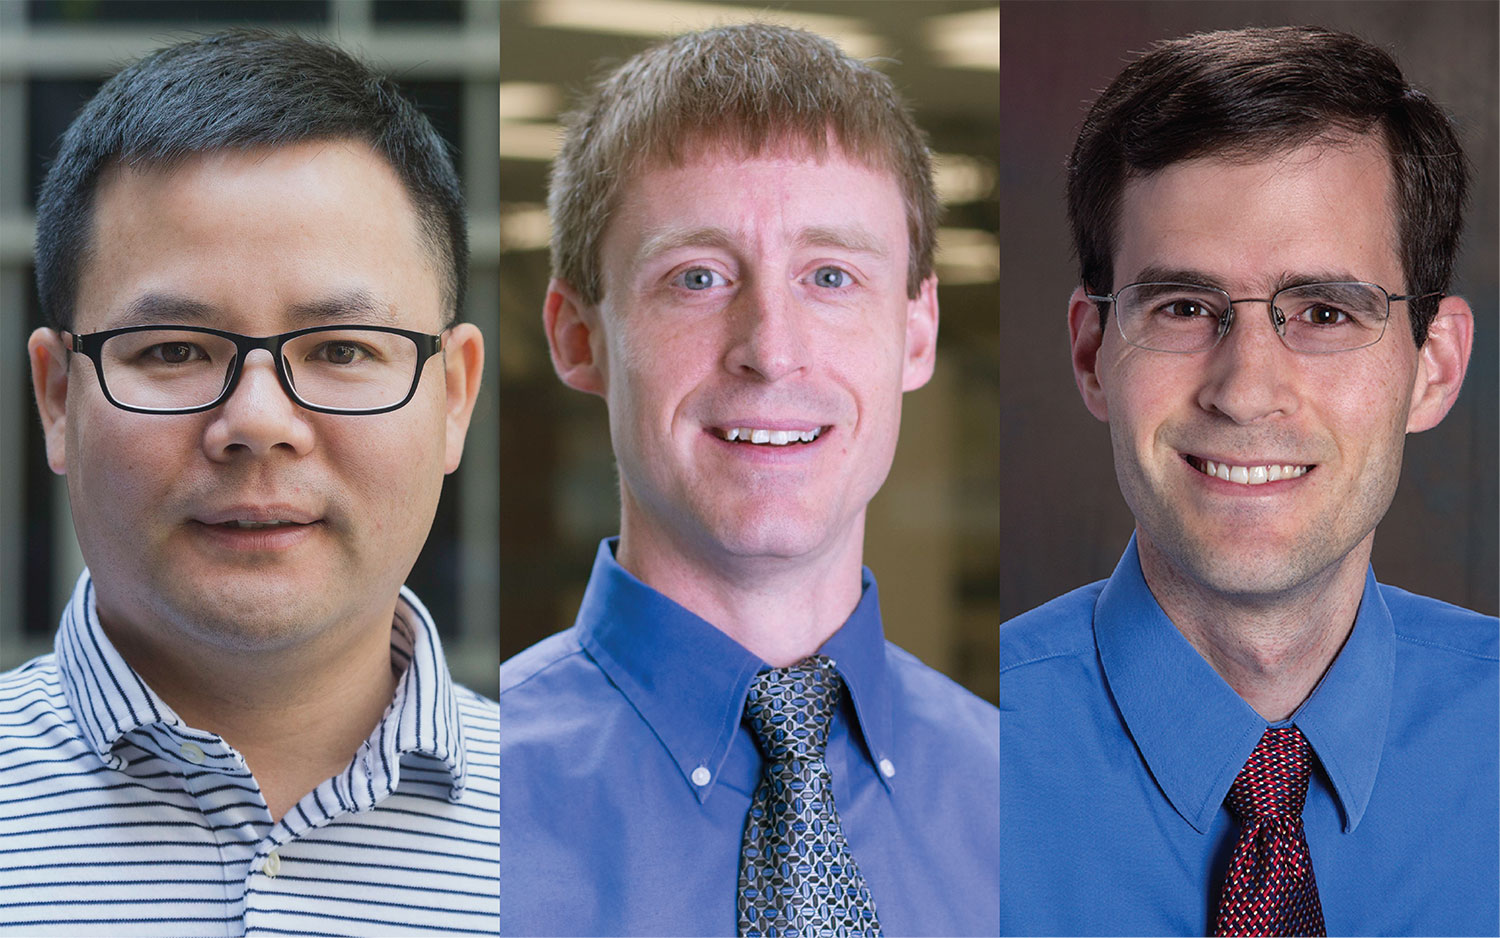 Changqing Luo, Ph.D., John Speich, Ph.D. and John Wilson, Ph.D.